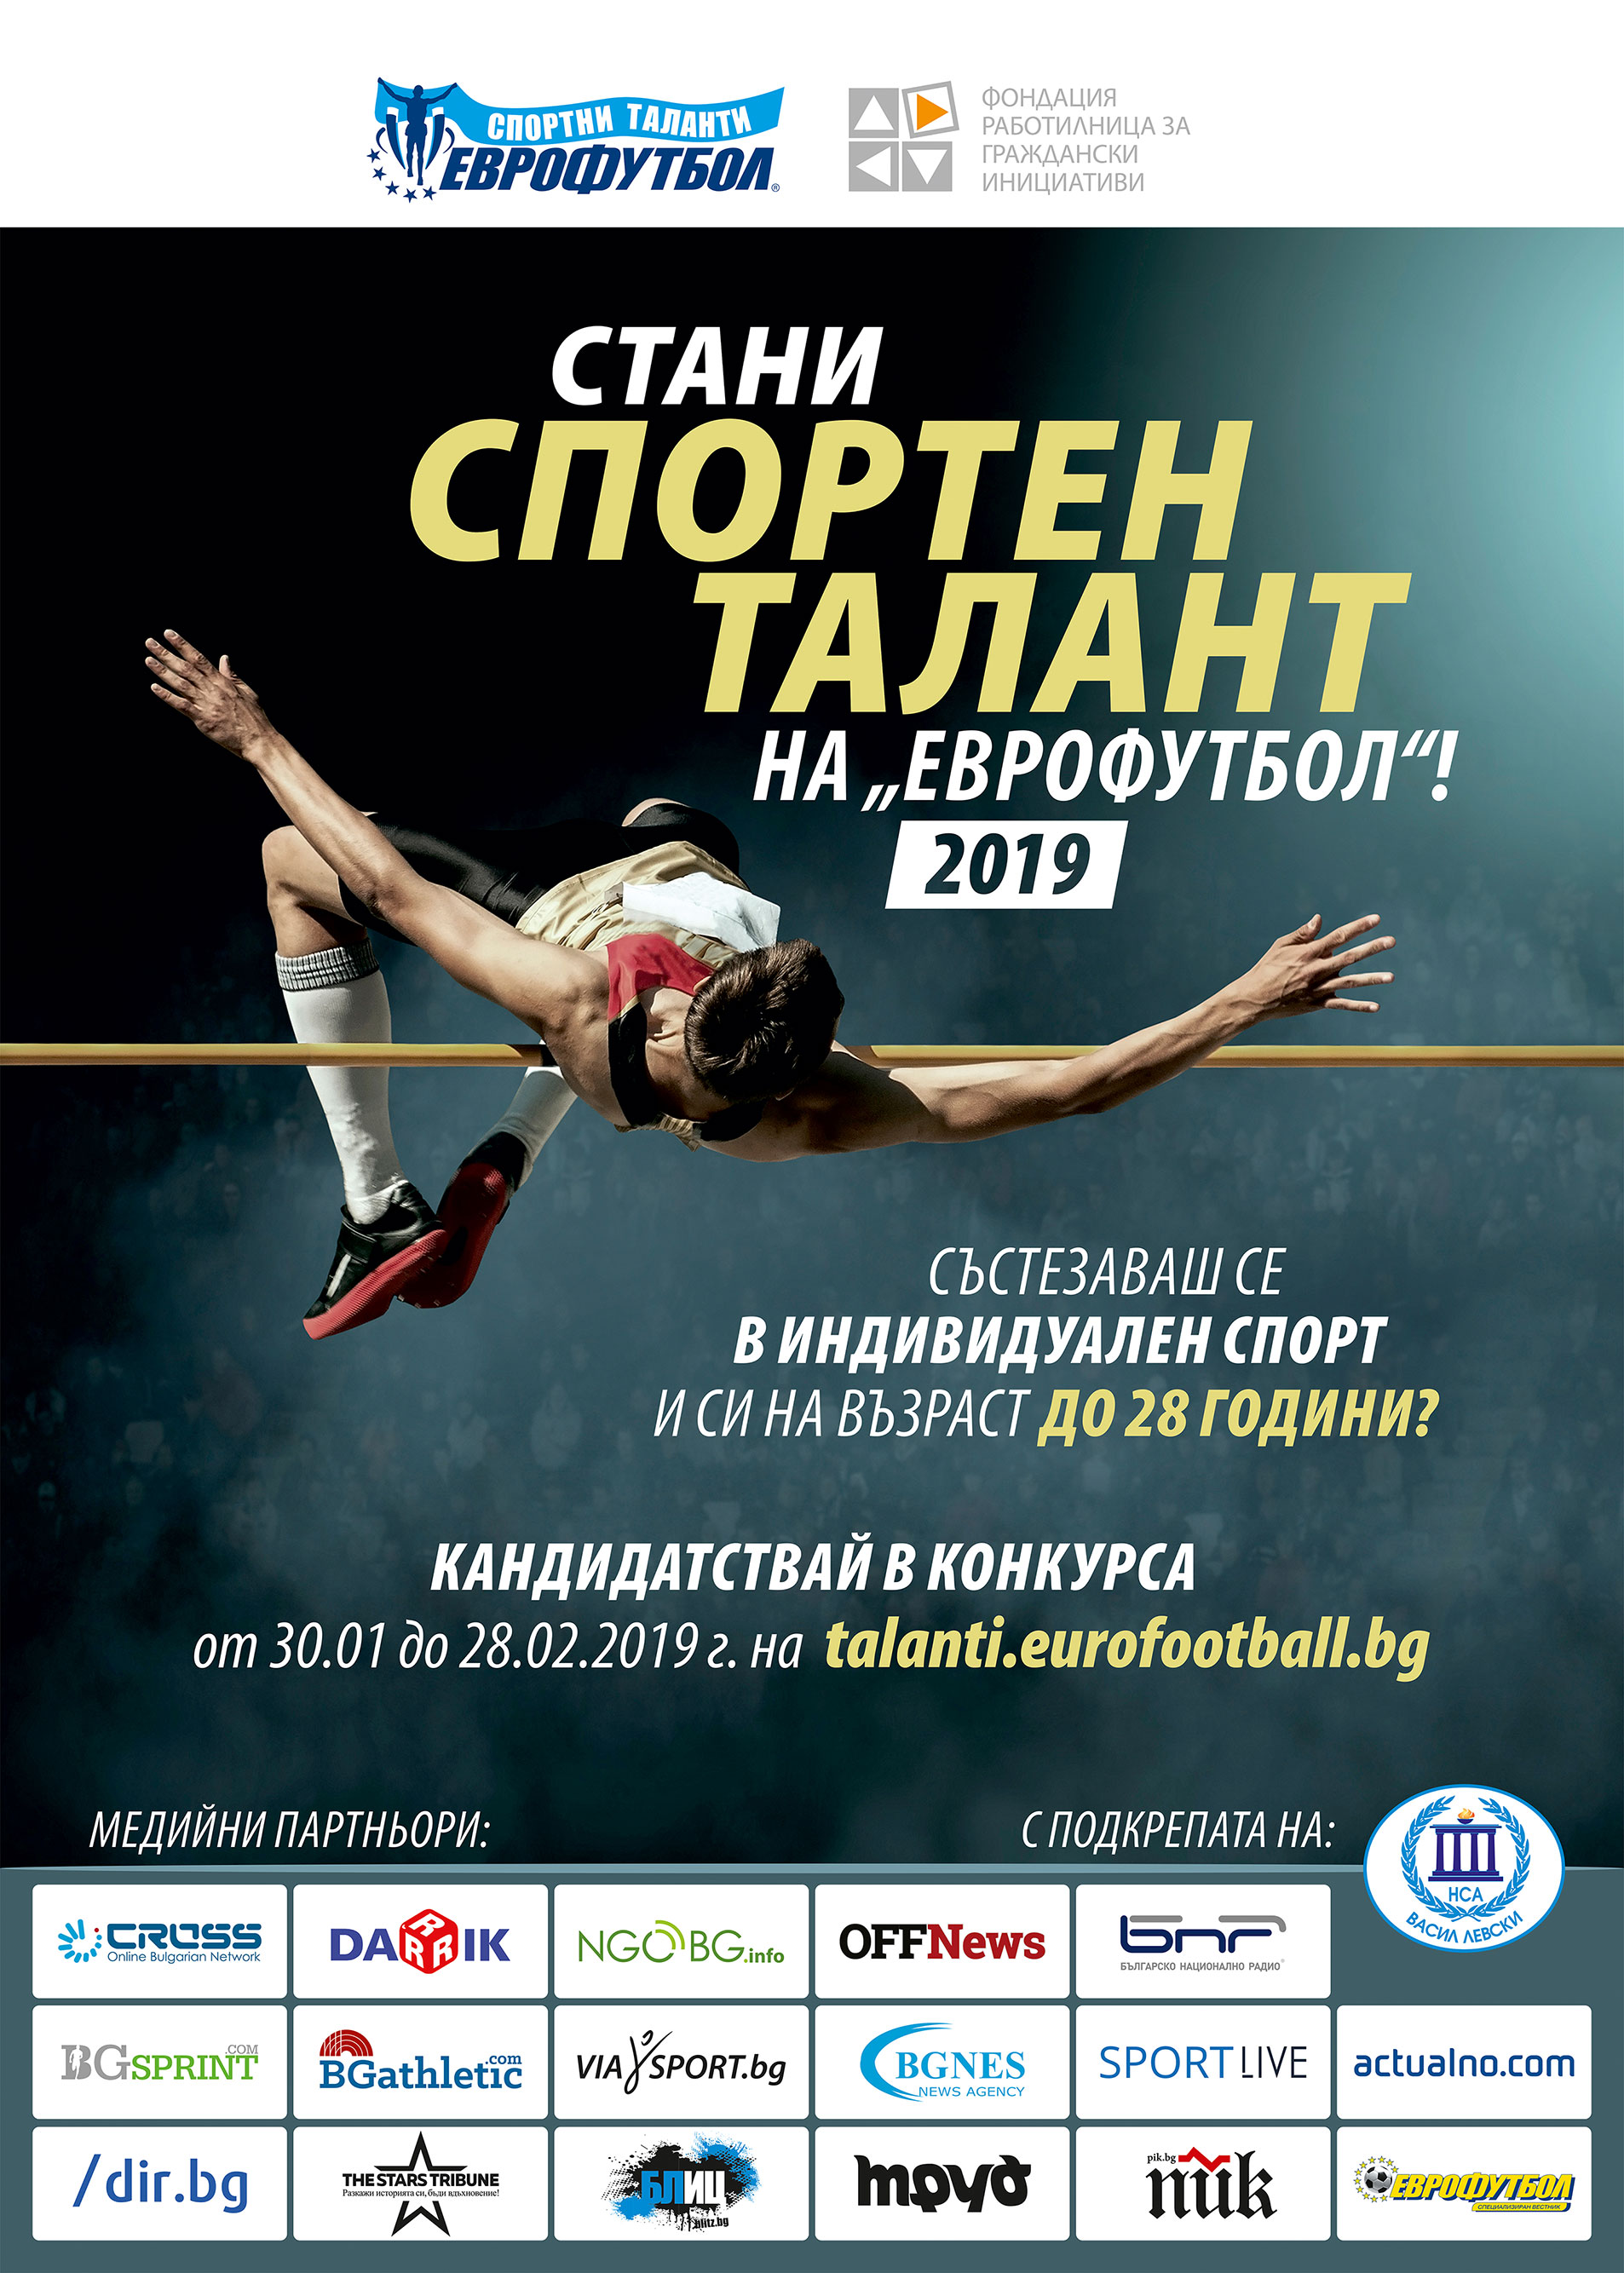 Отворен е 8-ият конкурс за „Спортни таланти” на „Еврофутбол” и ФРГИ